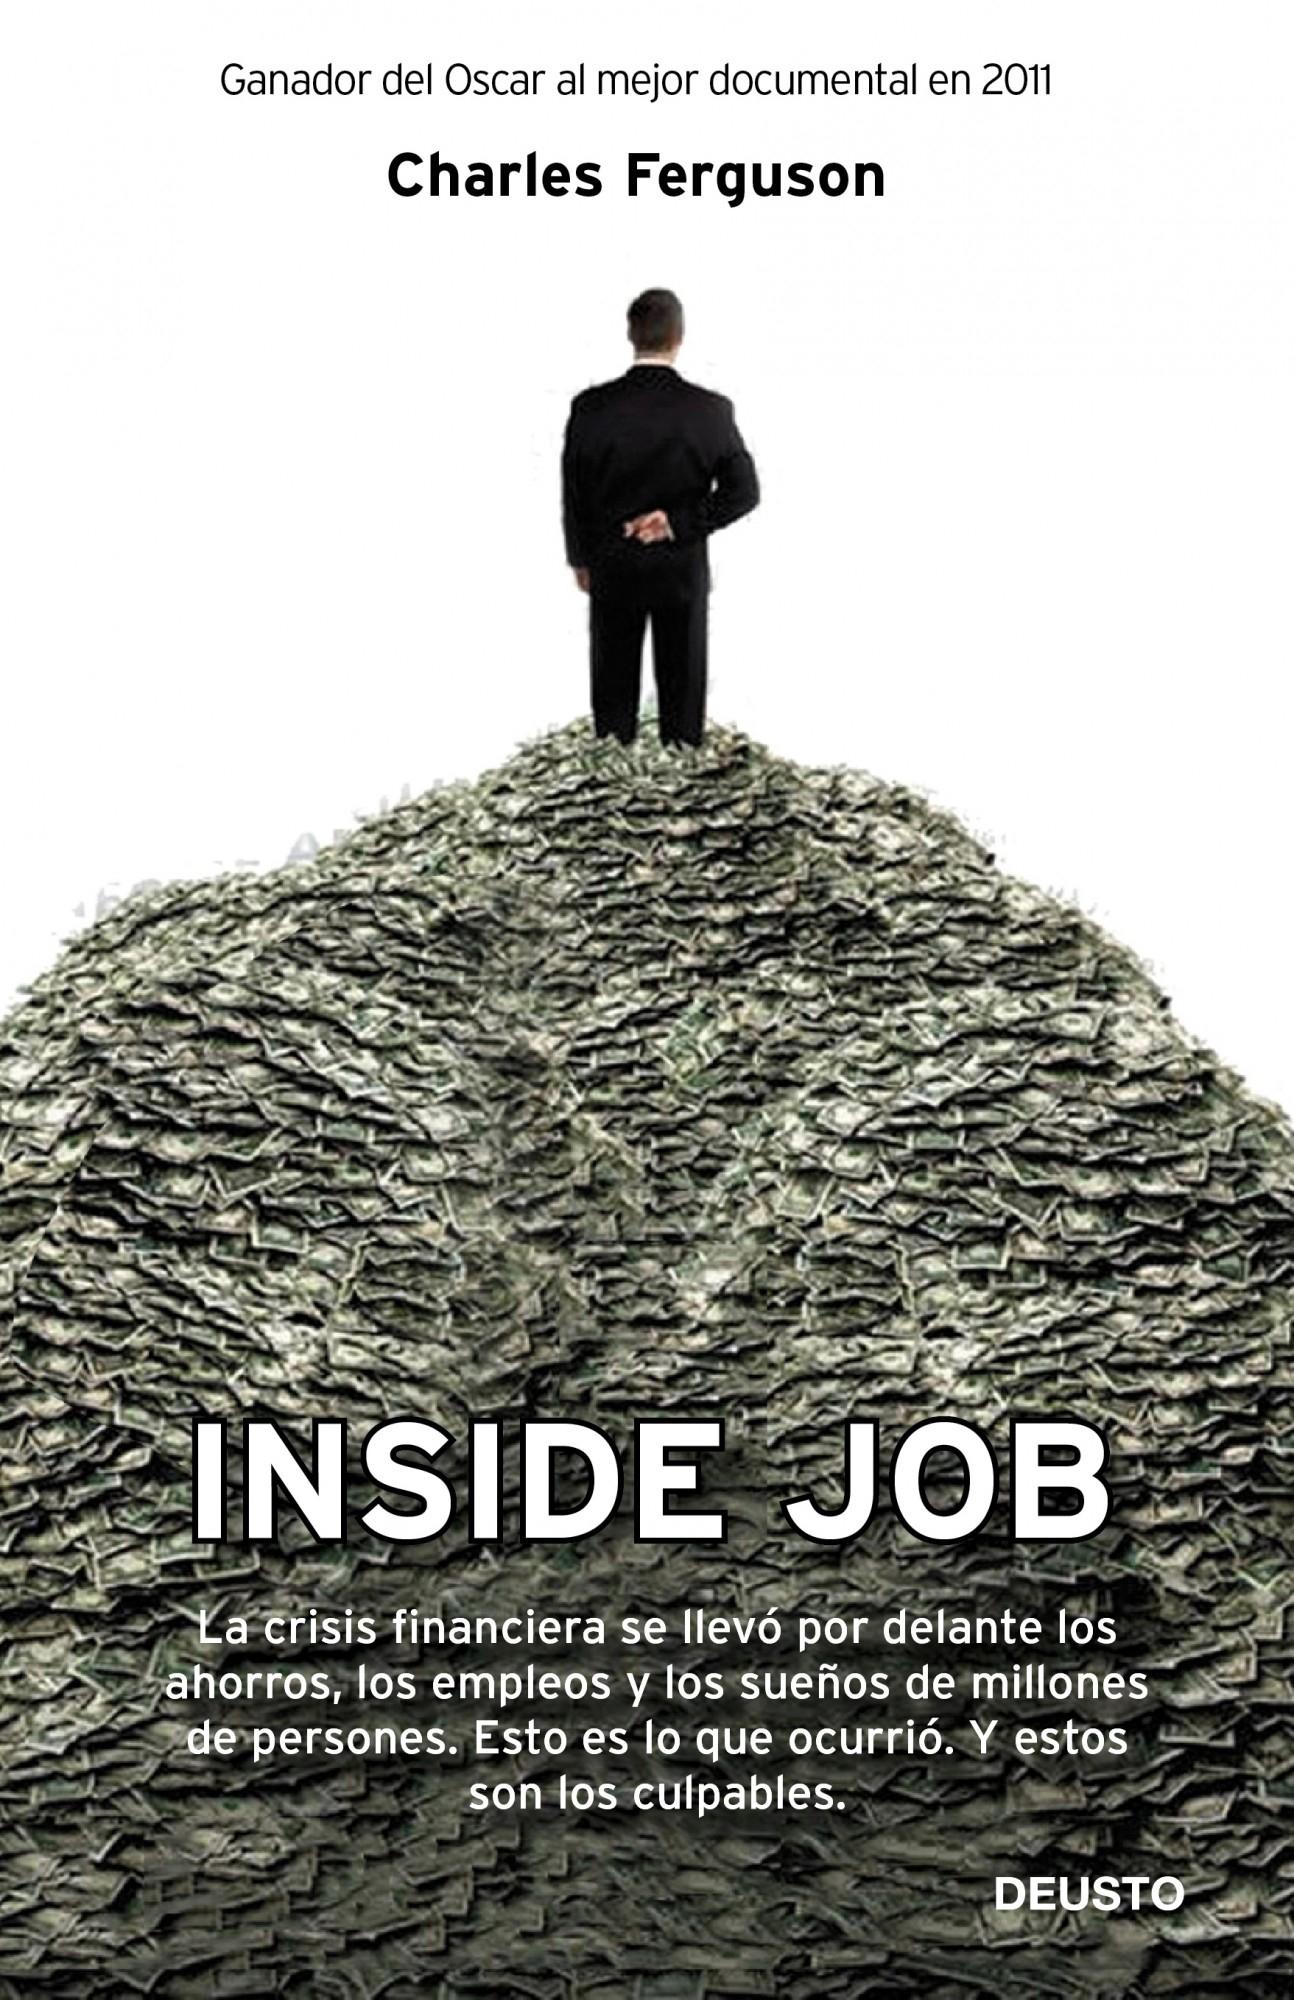 Inside Job "La crisis financiera se llevó por delante los ahorros, los emple"